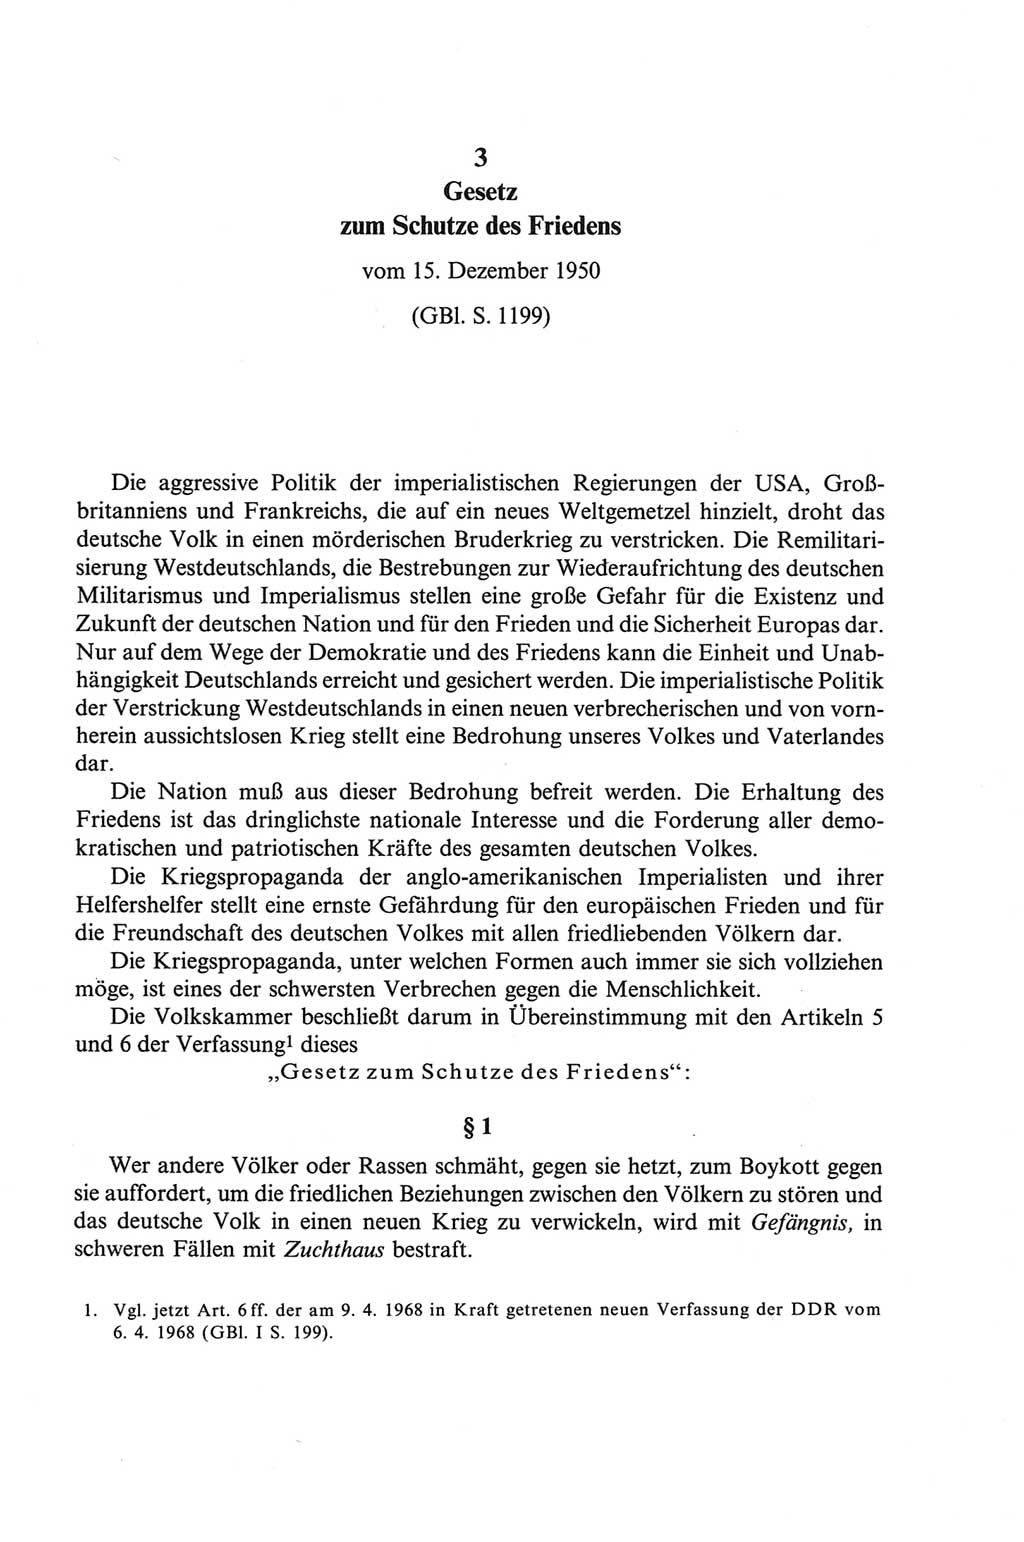 Strafgesetzbuch (StGB) der Deutschen Demokratischen Republik (DDR) und angrenzende Gesetze und Bestimmungen 1968, Seite 135 (StGB Ges. Best. DDR 1968, S. 135)